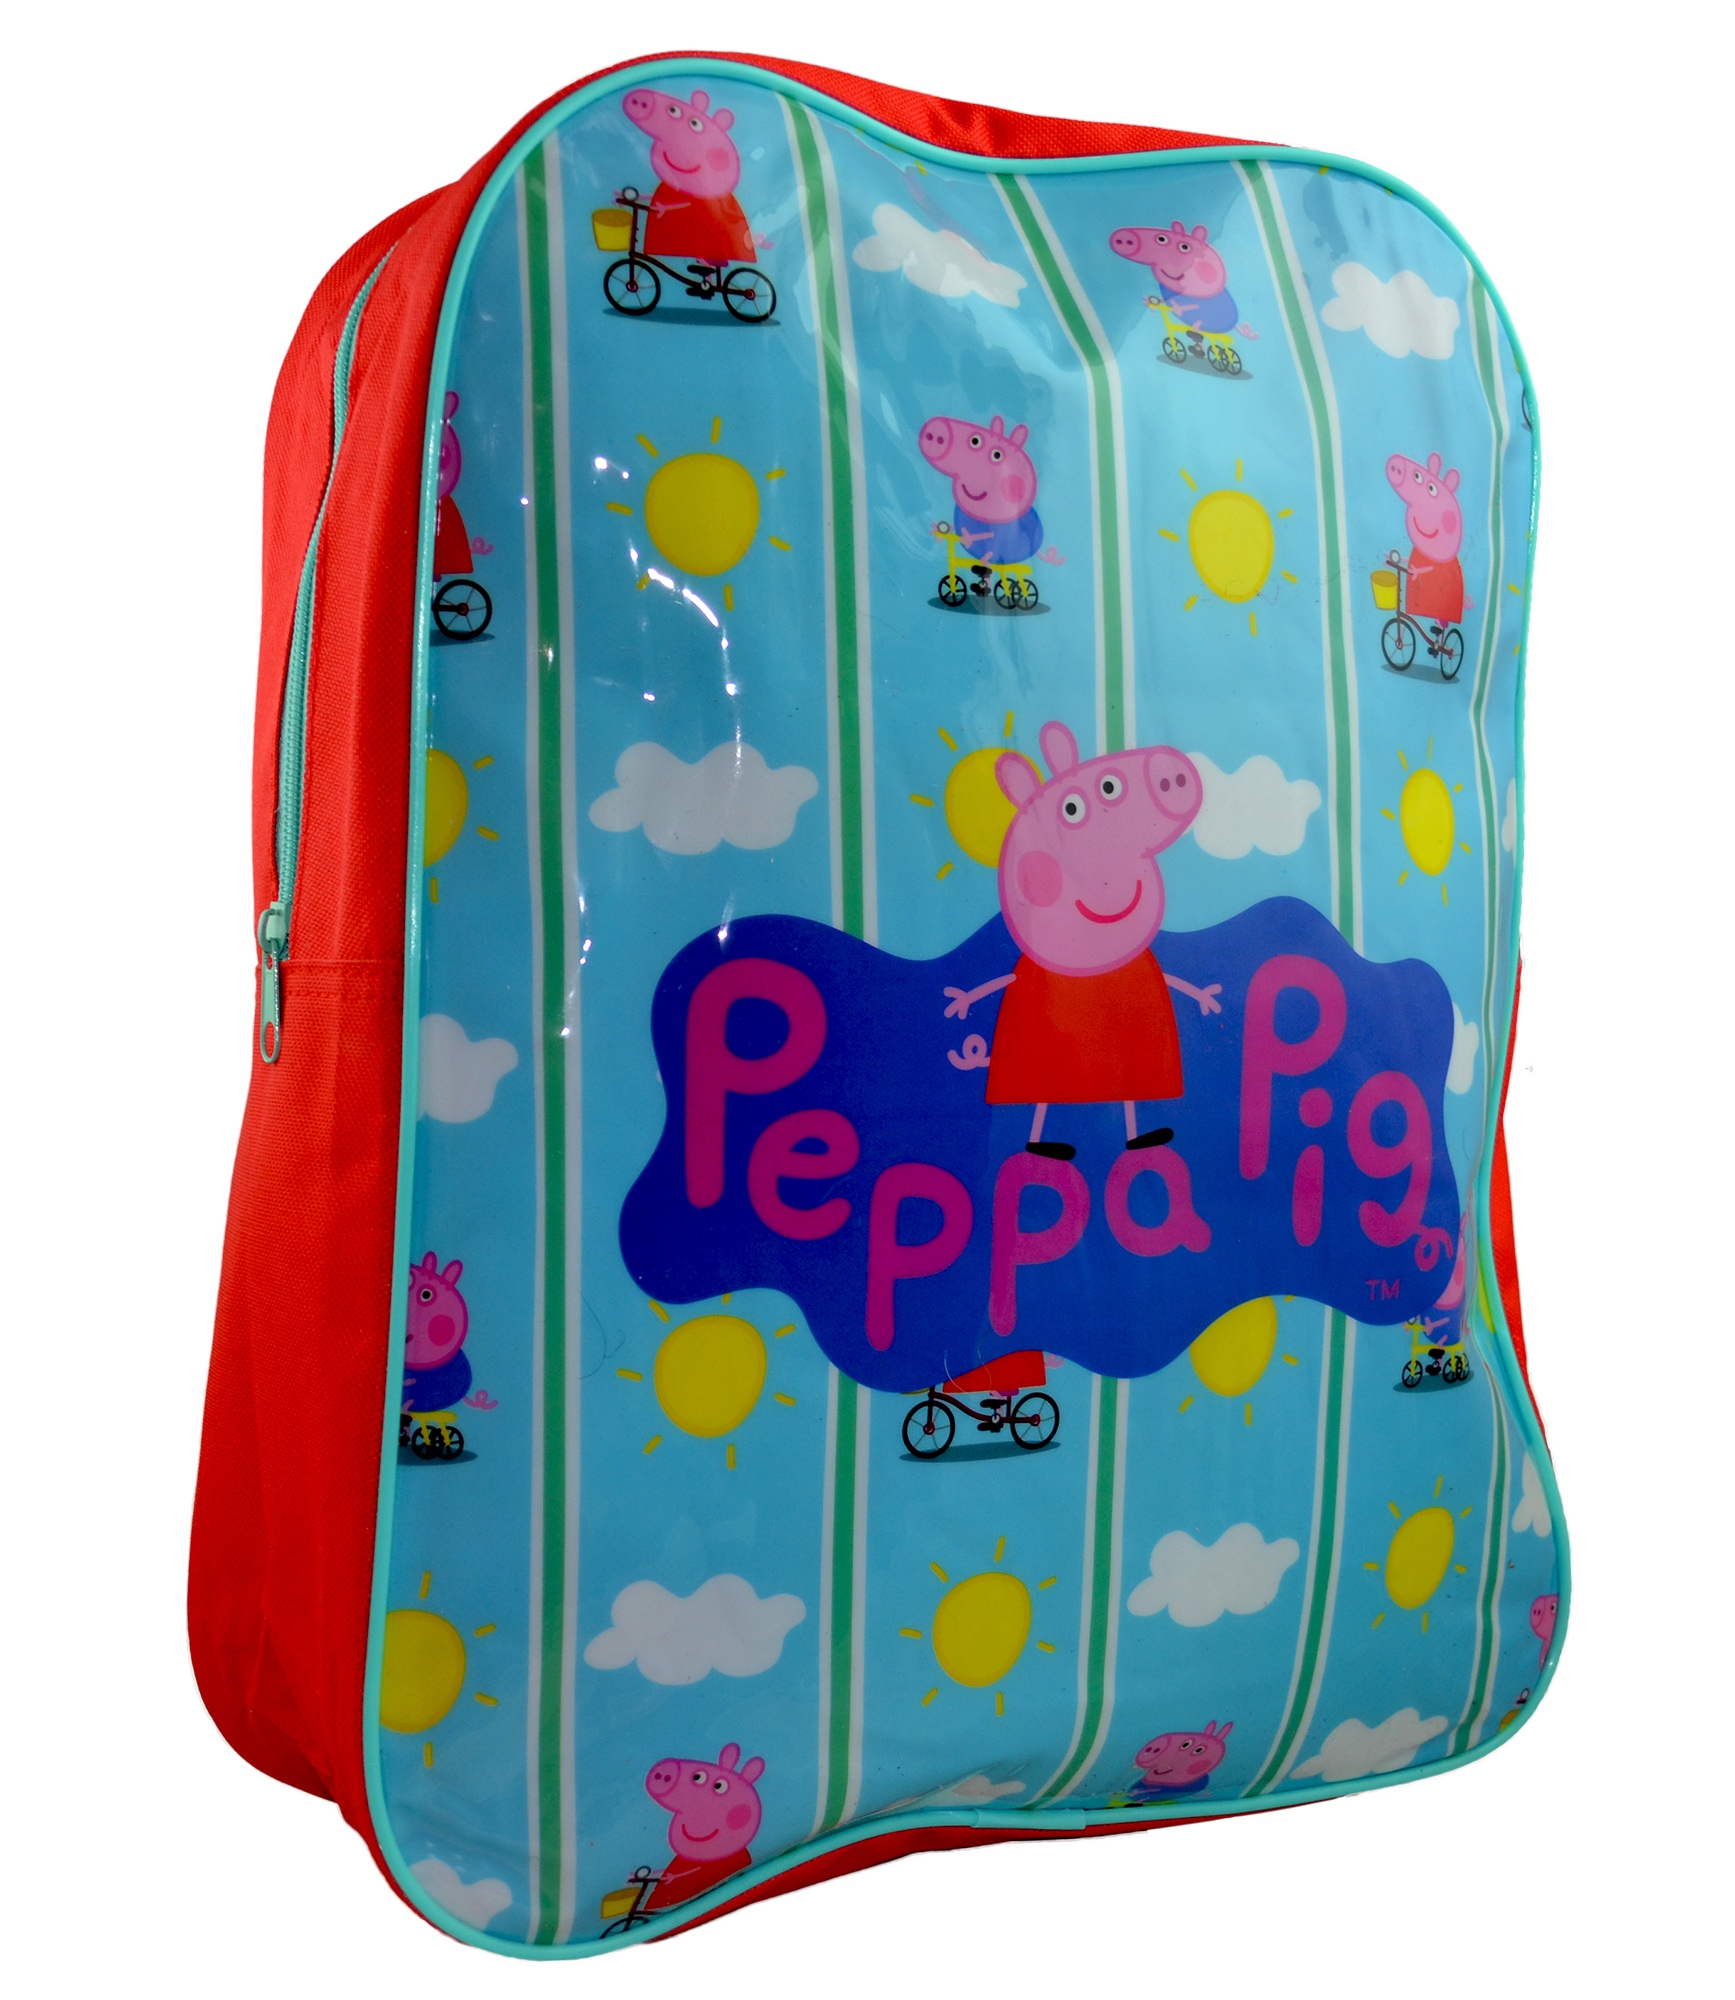 Peppa Pig 'Bicycle' Arch School Bag Rucksack Backpack